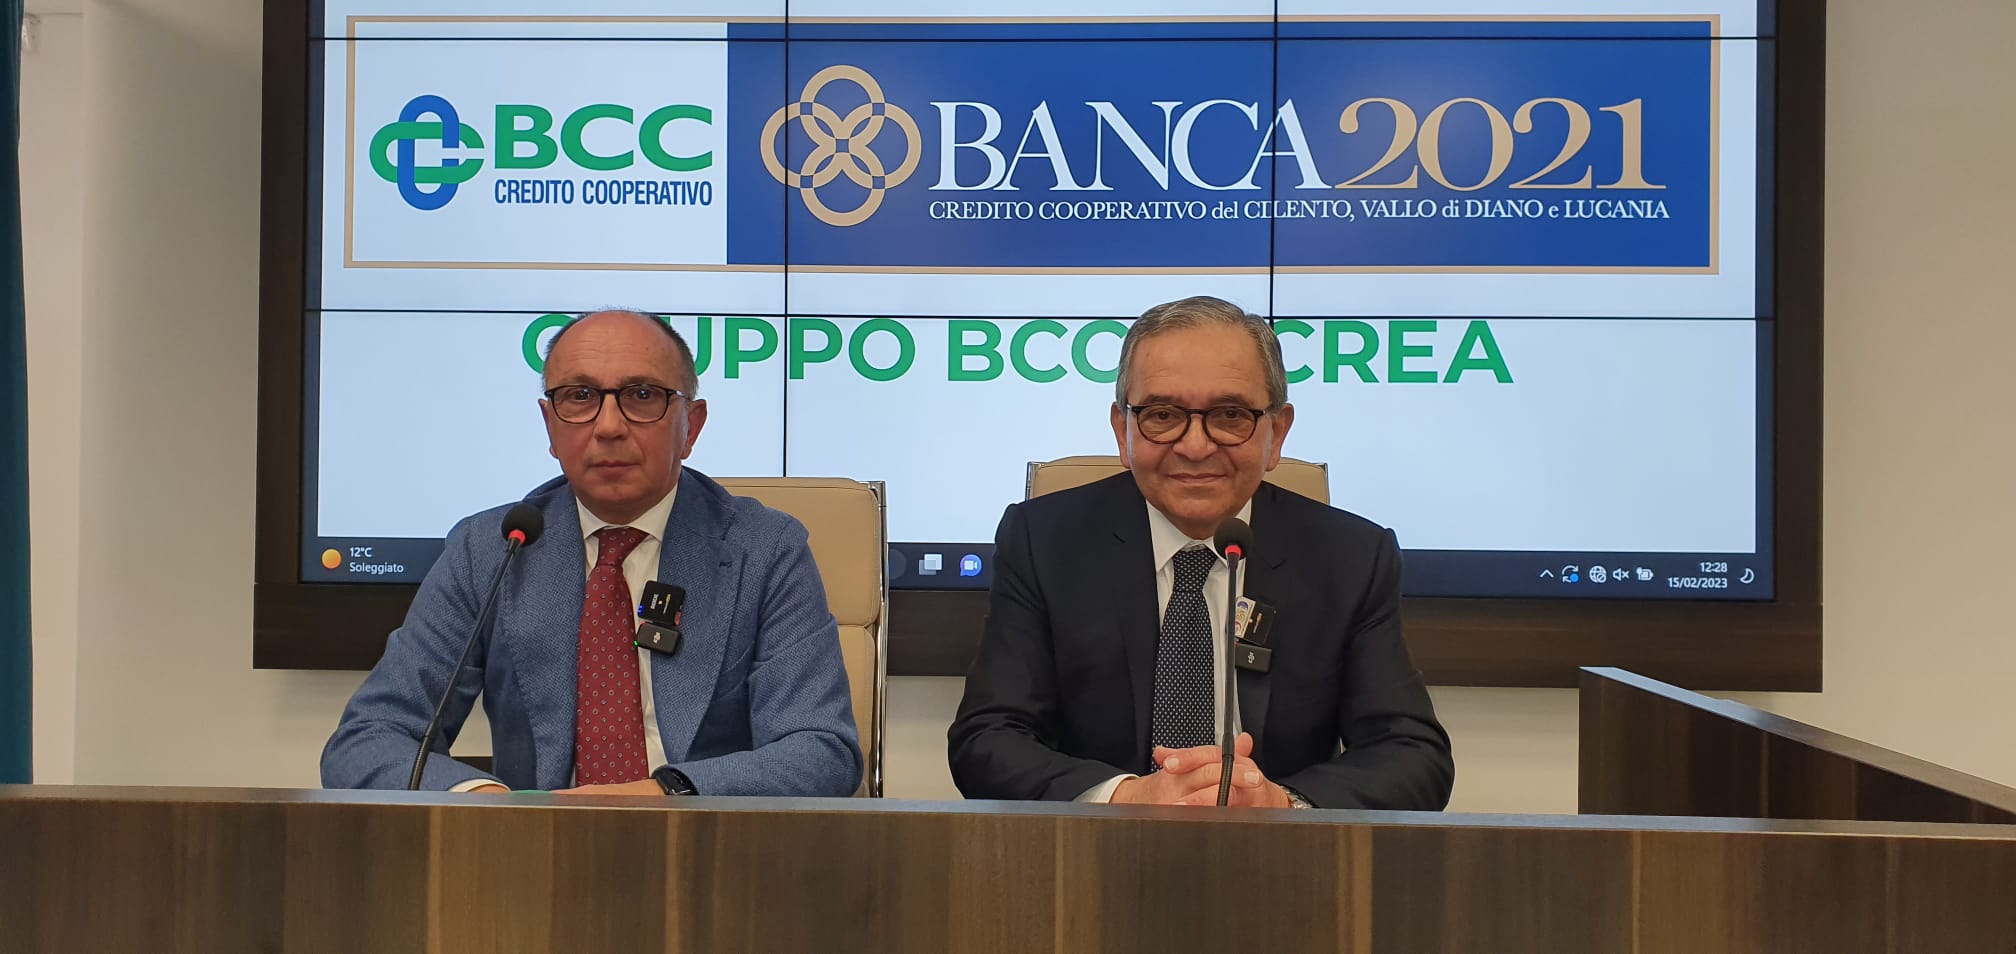 Banca 2021, fusione in corso con la Bcc di Buccino e dei Comuni Cilentani. Le precisazioni del presidente Lucibello